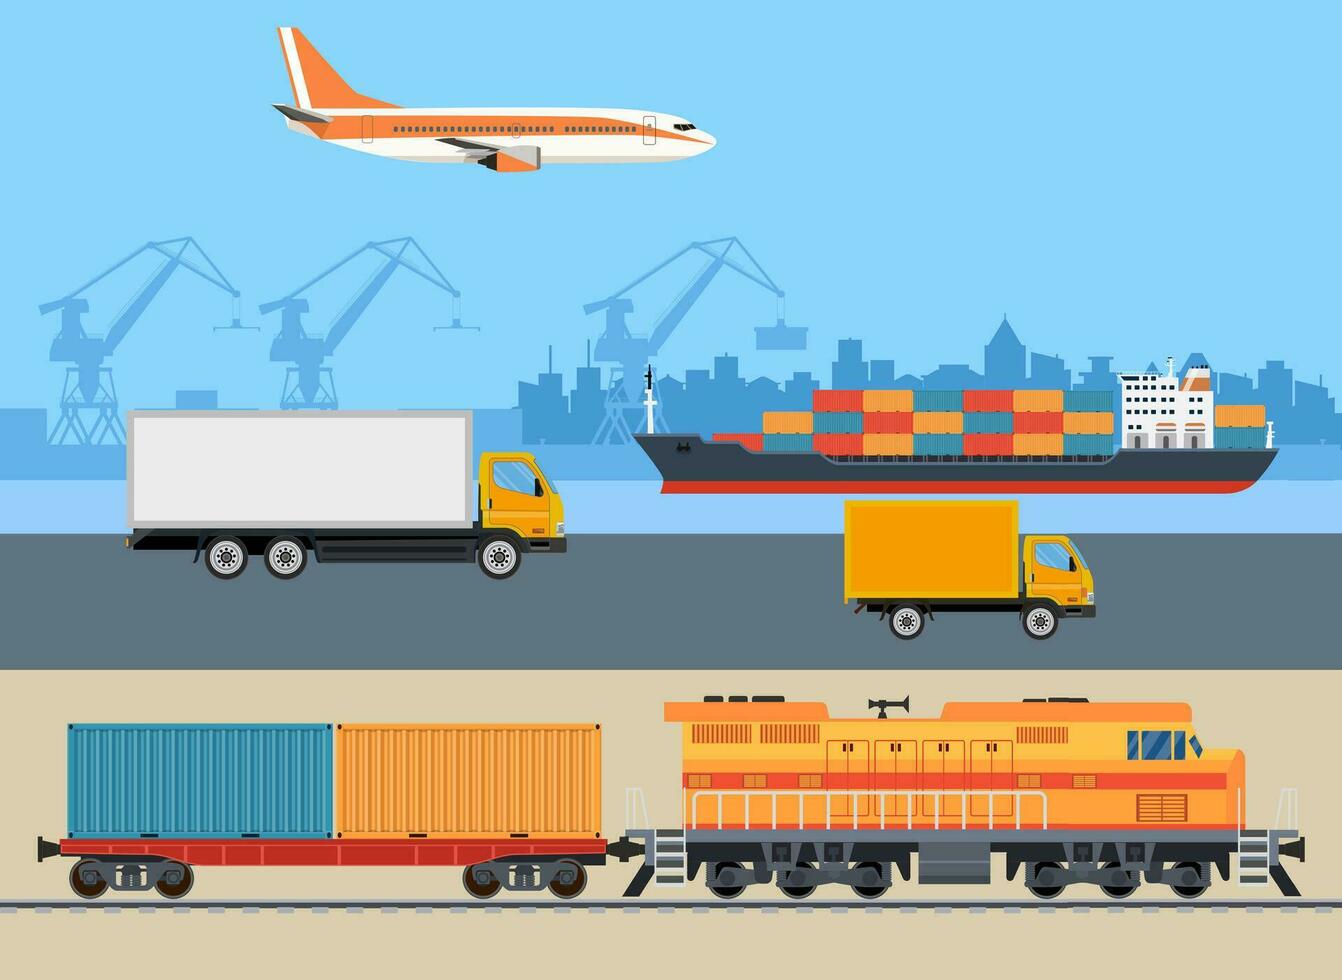 frakt logistik transport. fartyg, lastbil, bil, tåg, flygplan. importera exportera transport industri. global frakt transport. vektor illustration i platt stil